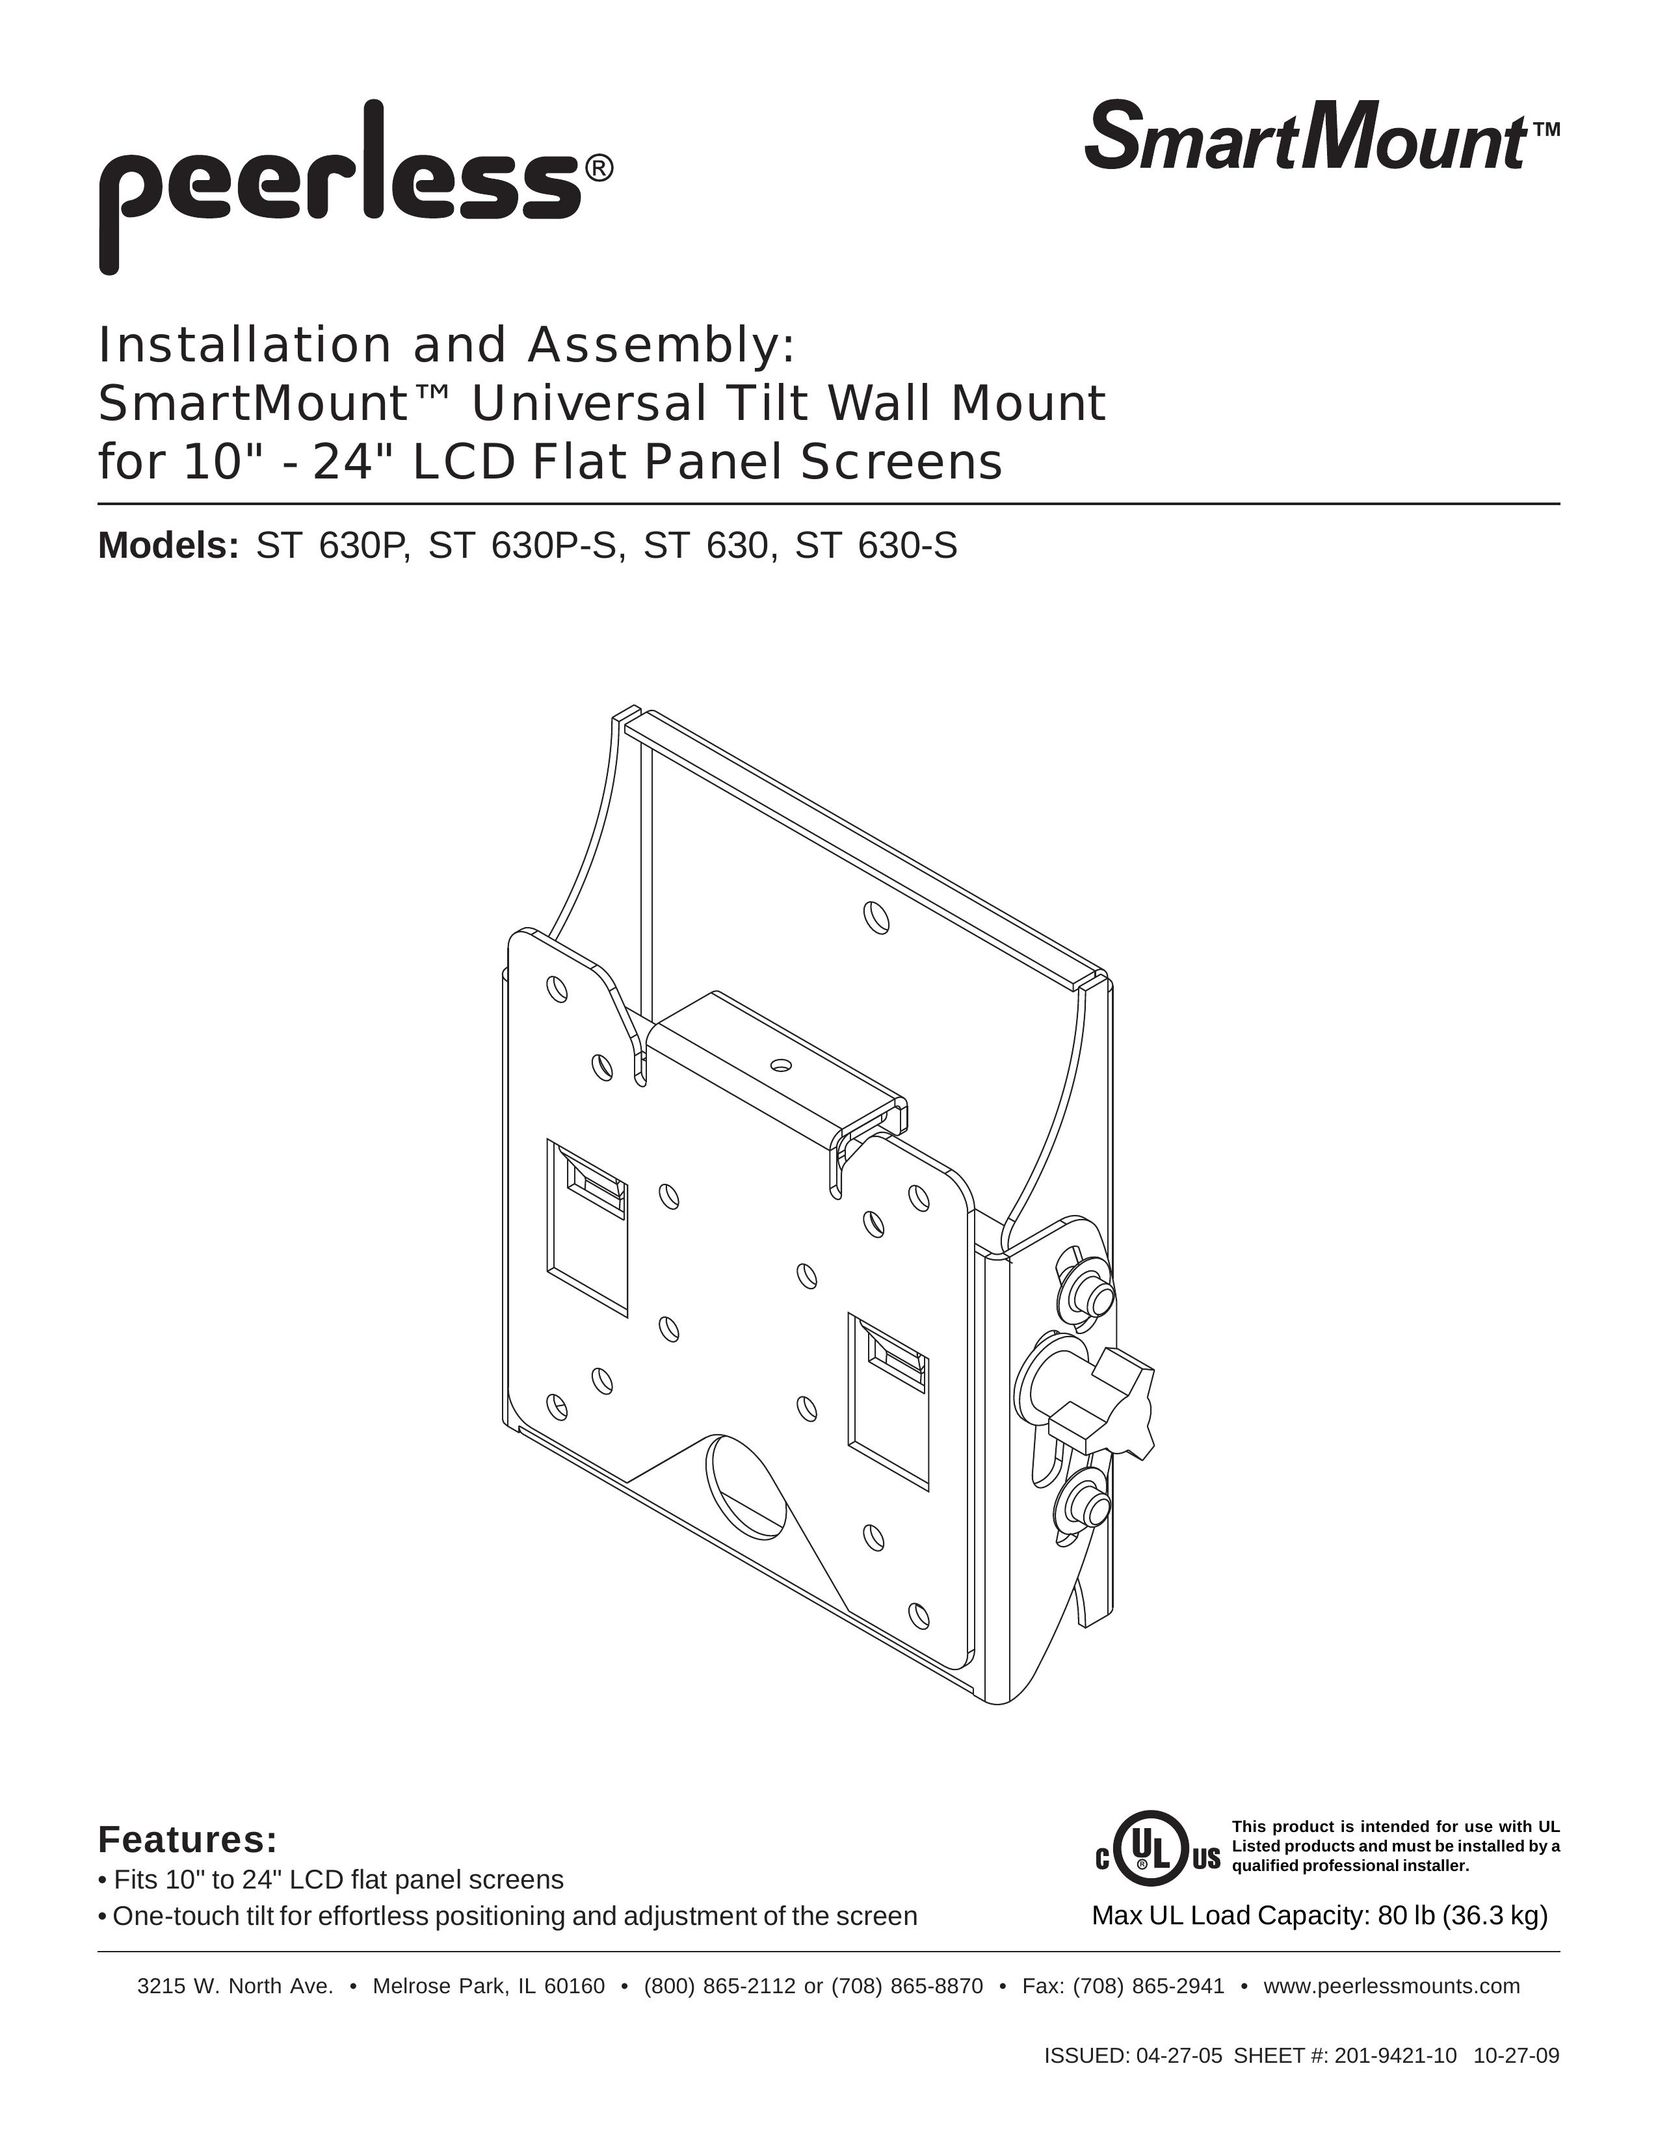 Peerless Industries 201-9421-10 TV Mount User Manual